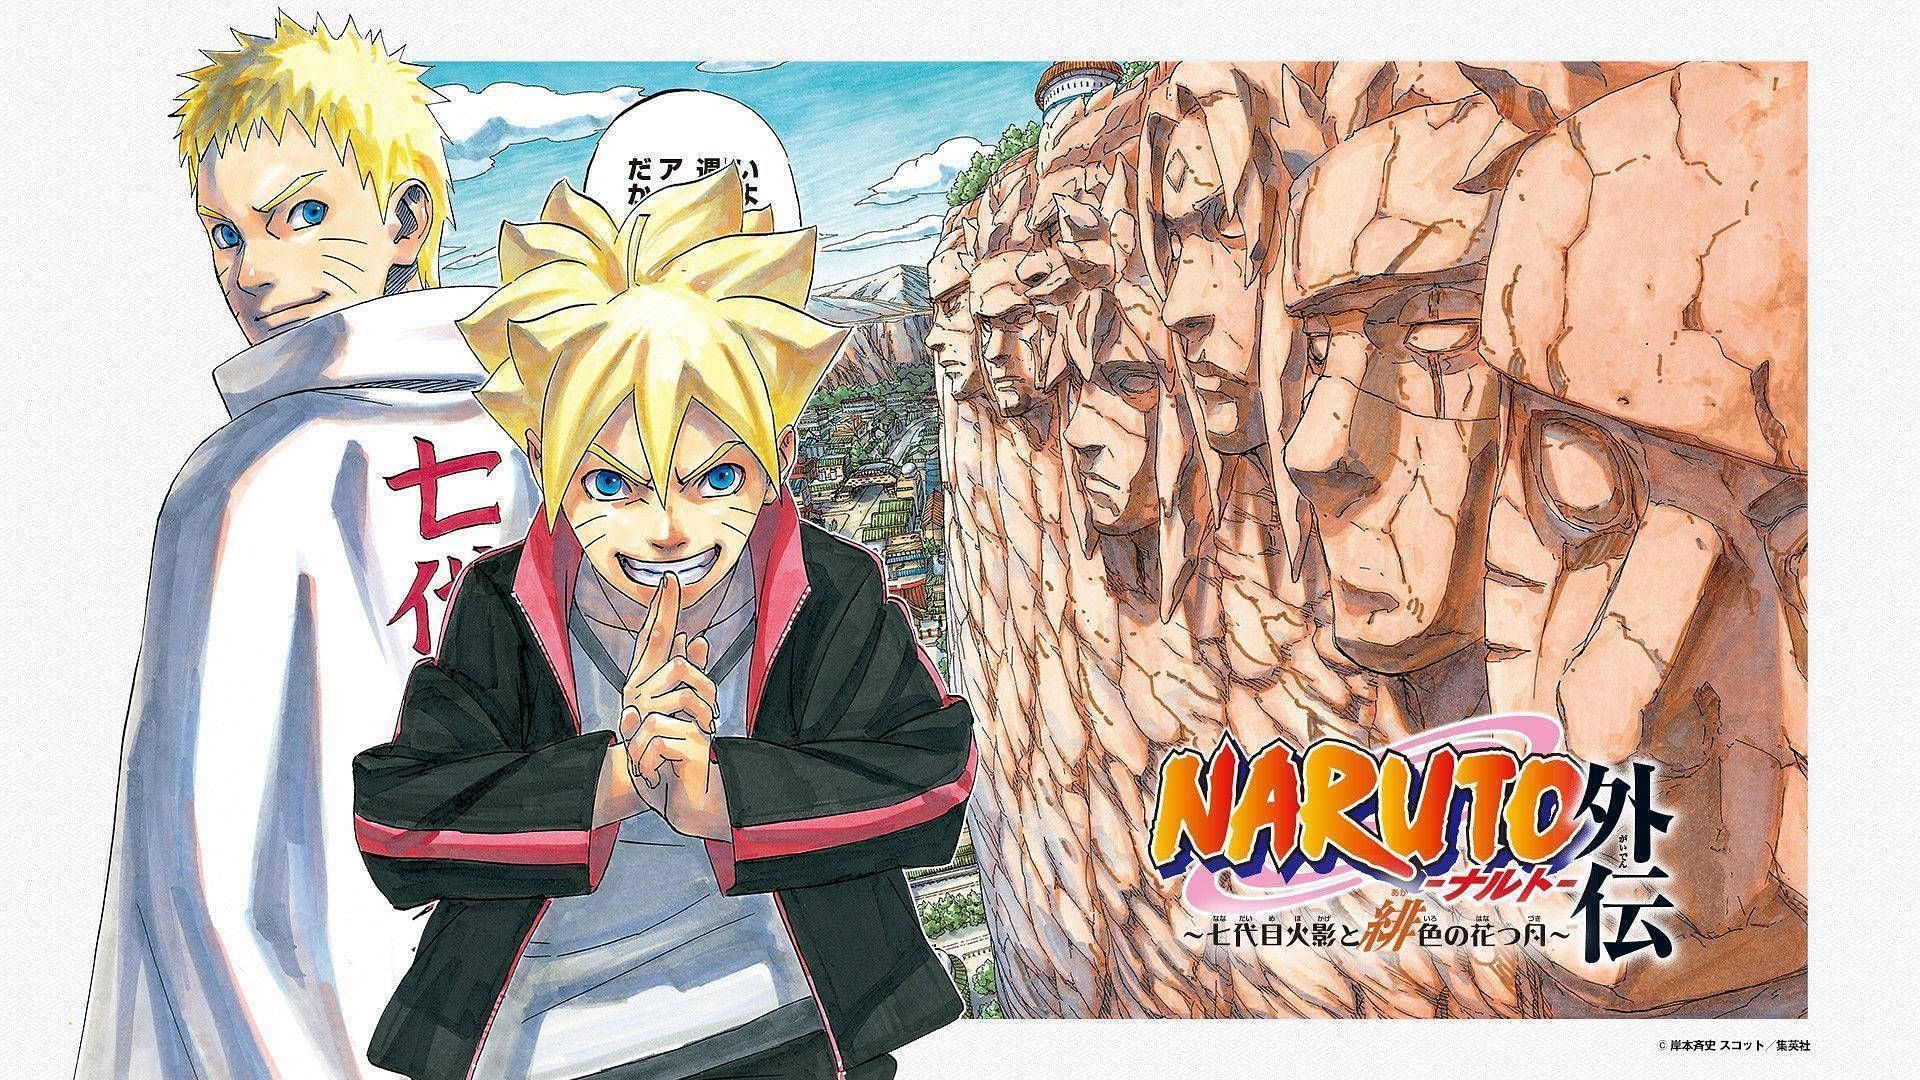 Boruto: Naruto Next Generations (Image via Masashi Kishimoto, Shueisha)